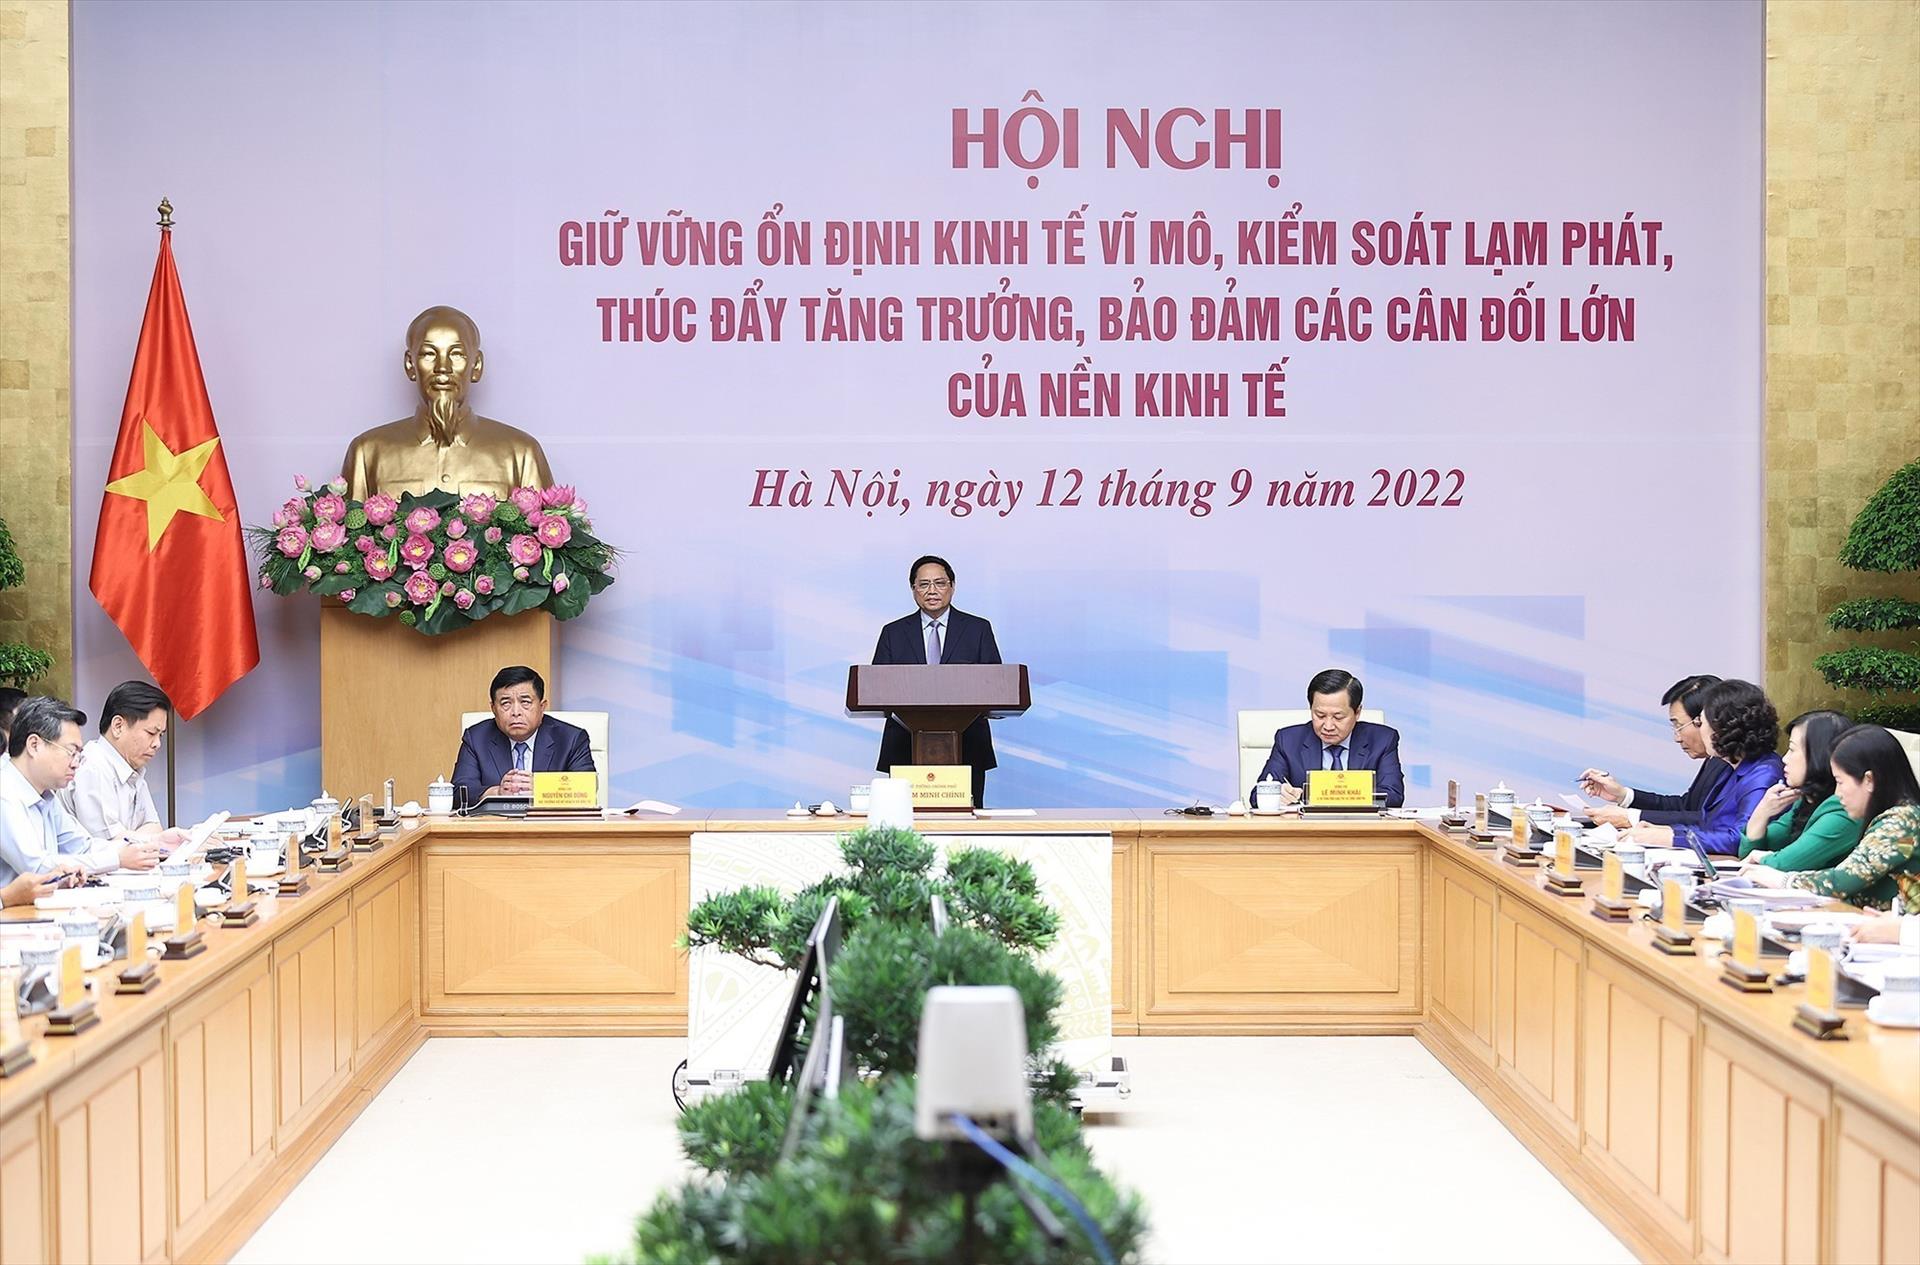 Việc duy trì ổn định kinh tế vĩ mô là một trong những mục tiêu hàng đầu của mỗi quốc gia. Đây là nền tảng để phát triển bền vững và mang lại lợi ích cho toàn xã hội. Năm 2024, Việt Nam đã đạt được mục tiêu này và đang trong quá trình bứt phá về kinh tế. Hãy xem ảnh để hiểu rõ hơn về tình hình kinh tế và tiềm năng của Việt Nam.